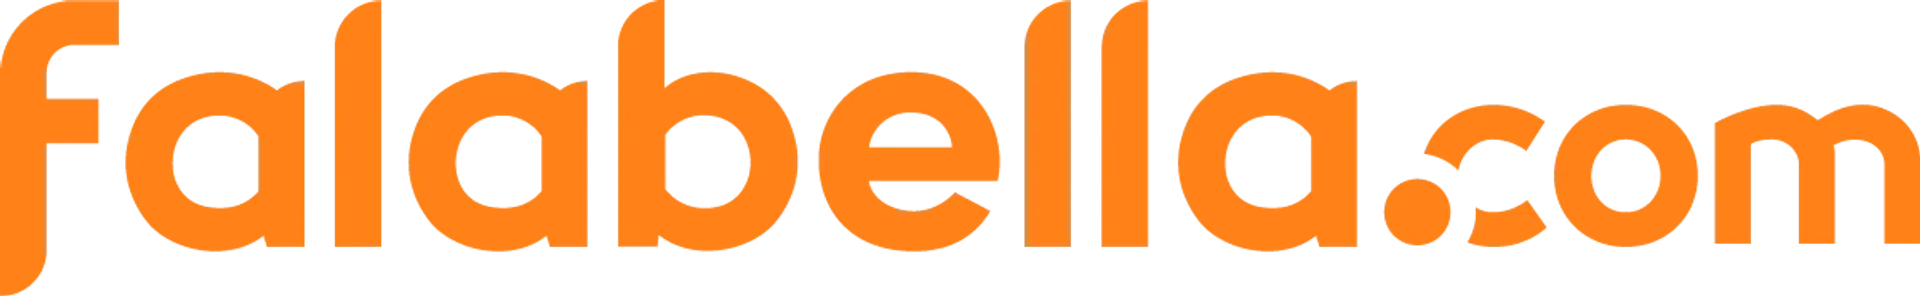 FALABELLA logo